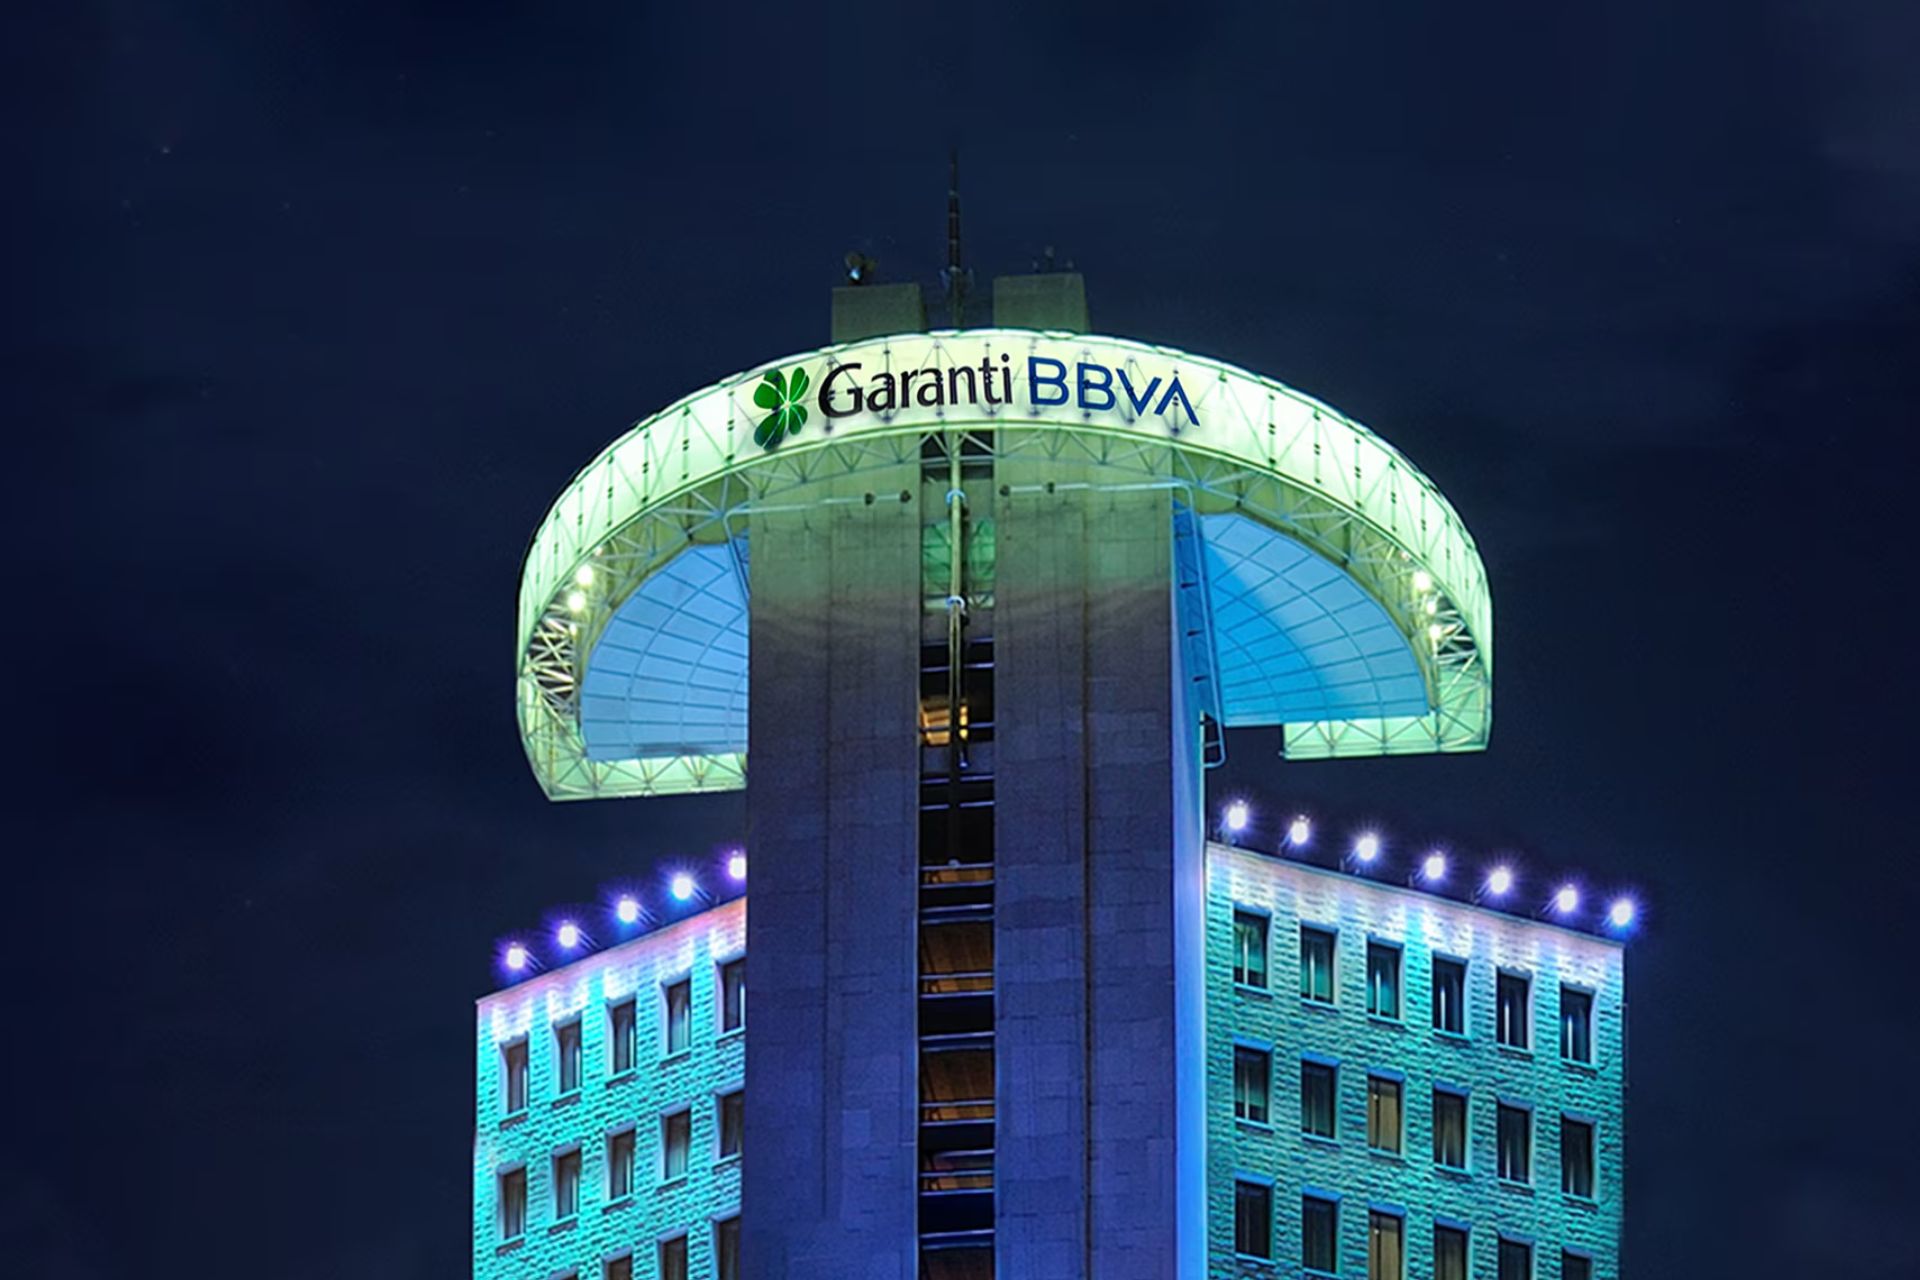 Garanti BBVA Digital Assets ستقوم قريبًا بإضافة دعم لمستخدمي منصة Garanti BBVA Crypto المحمولة